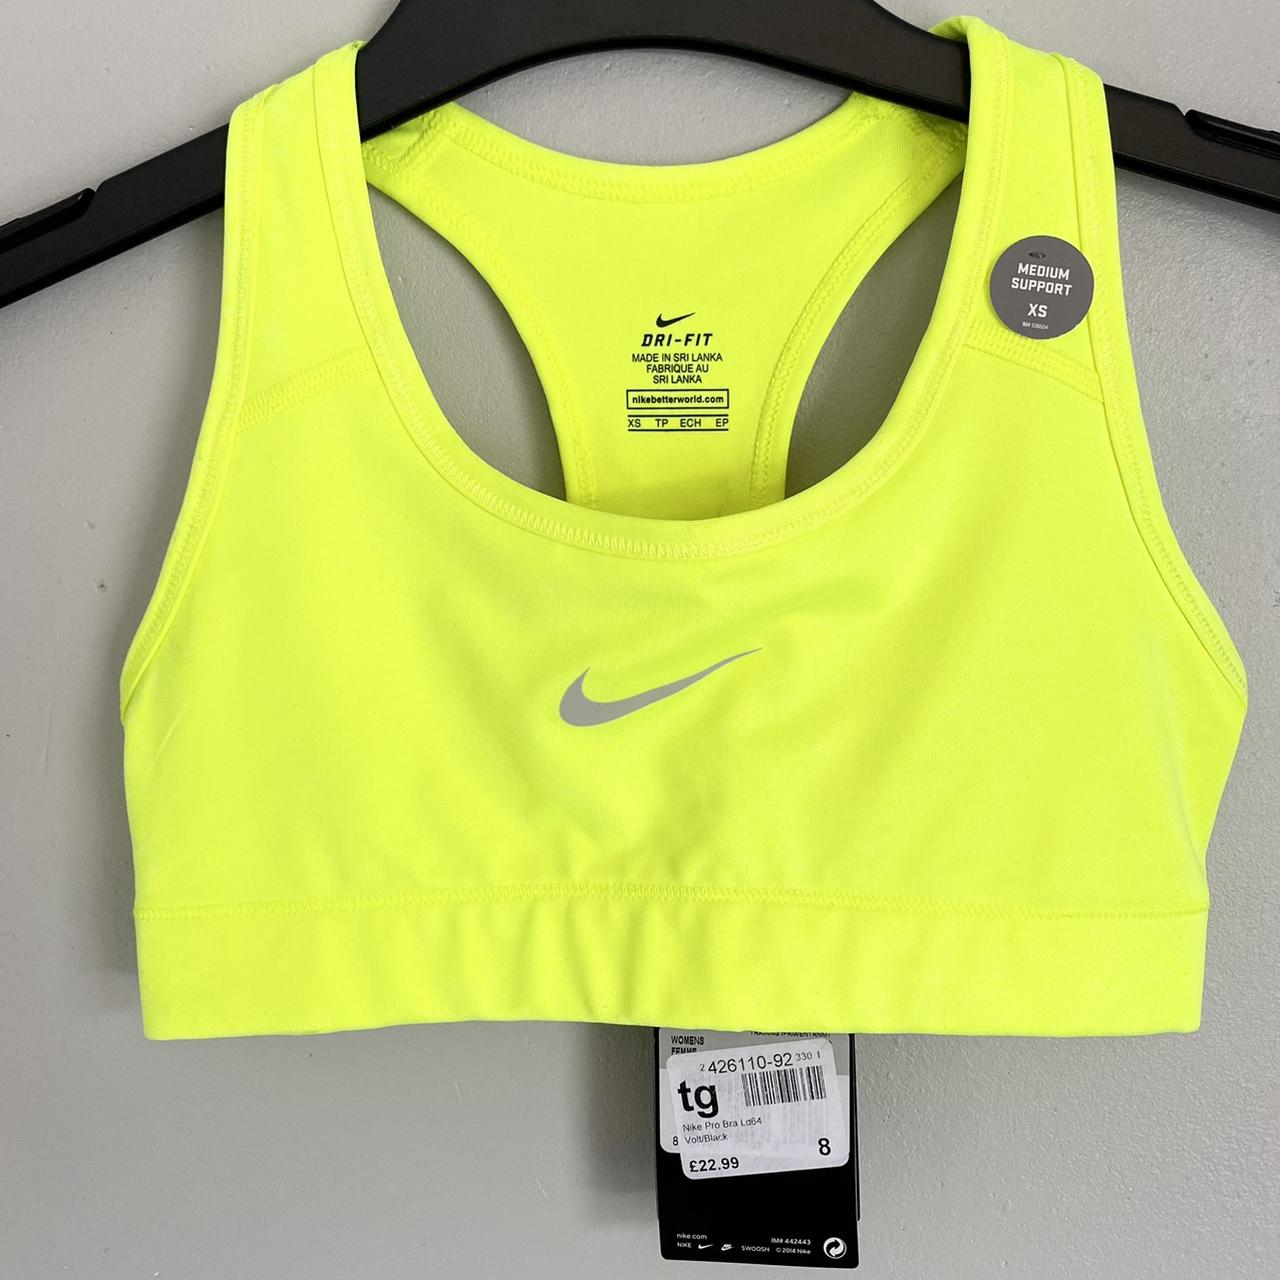 Buy Nike Sports Bras Women Neon Green online